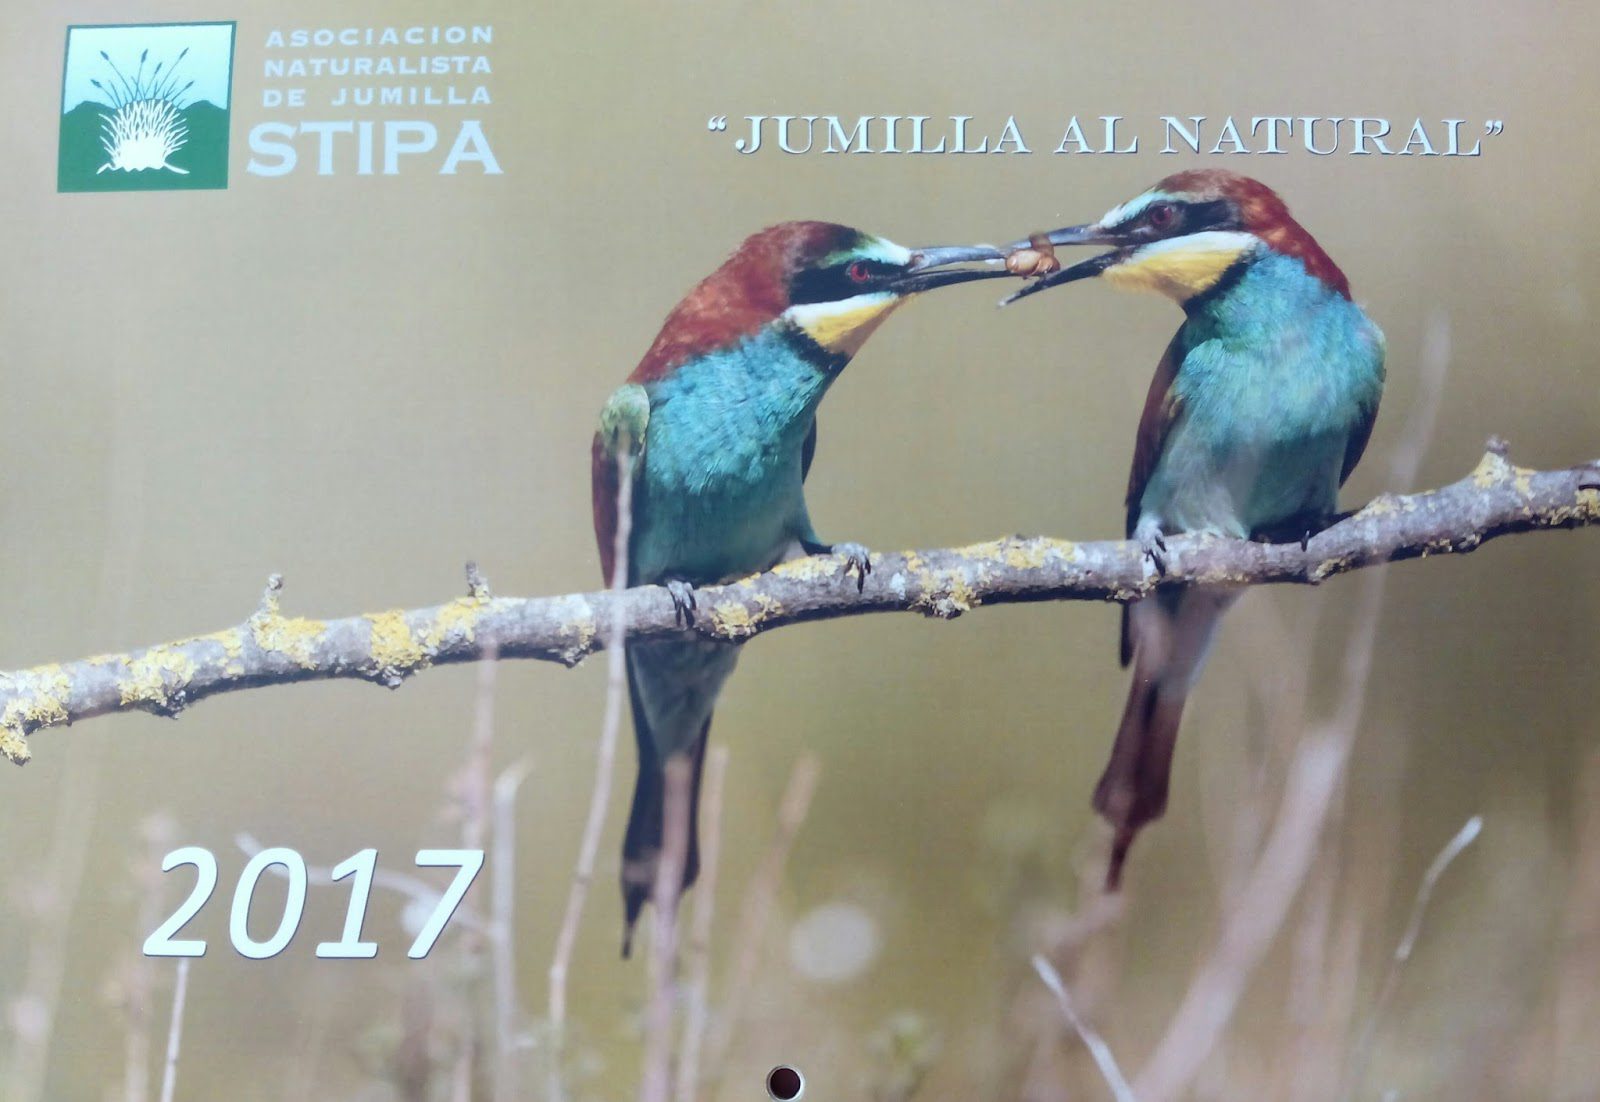 Stipa busca las fotografías de paisajes naturales, flora o fauna que ilustren su calendario para 2018